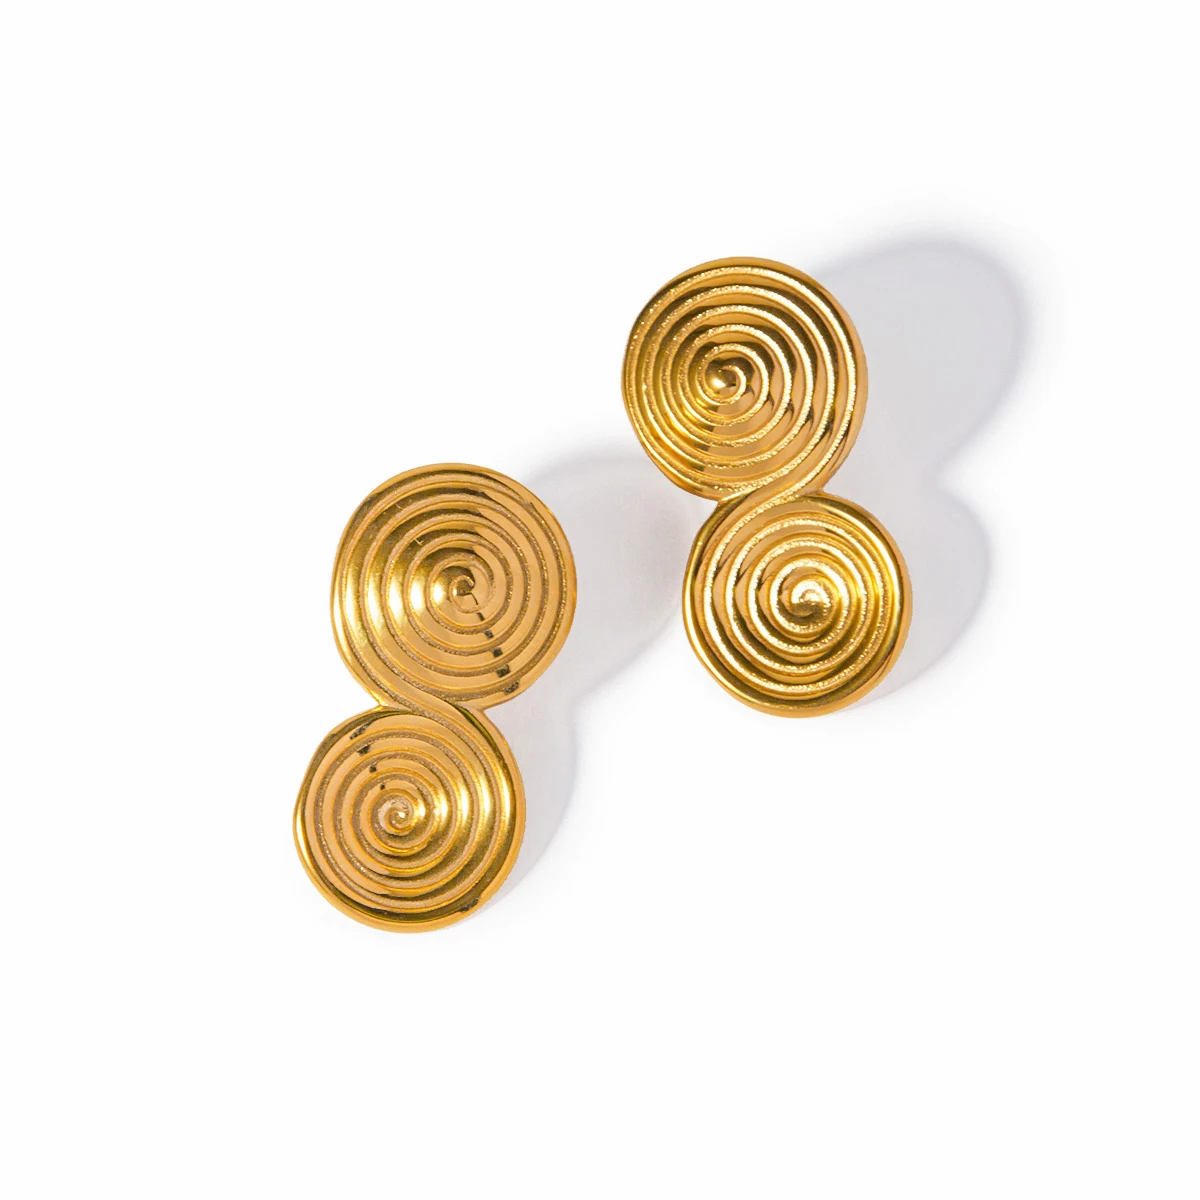 

J&D Luxury Stainless Steel Earrings Jewelry 18K Gold Plated Spiral Hoop Textured Stud Earrings